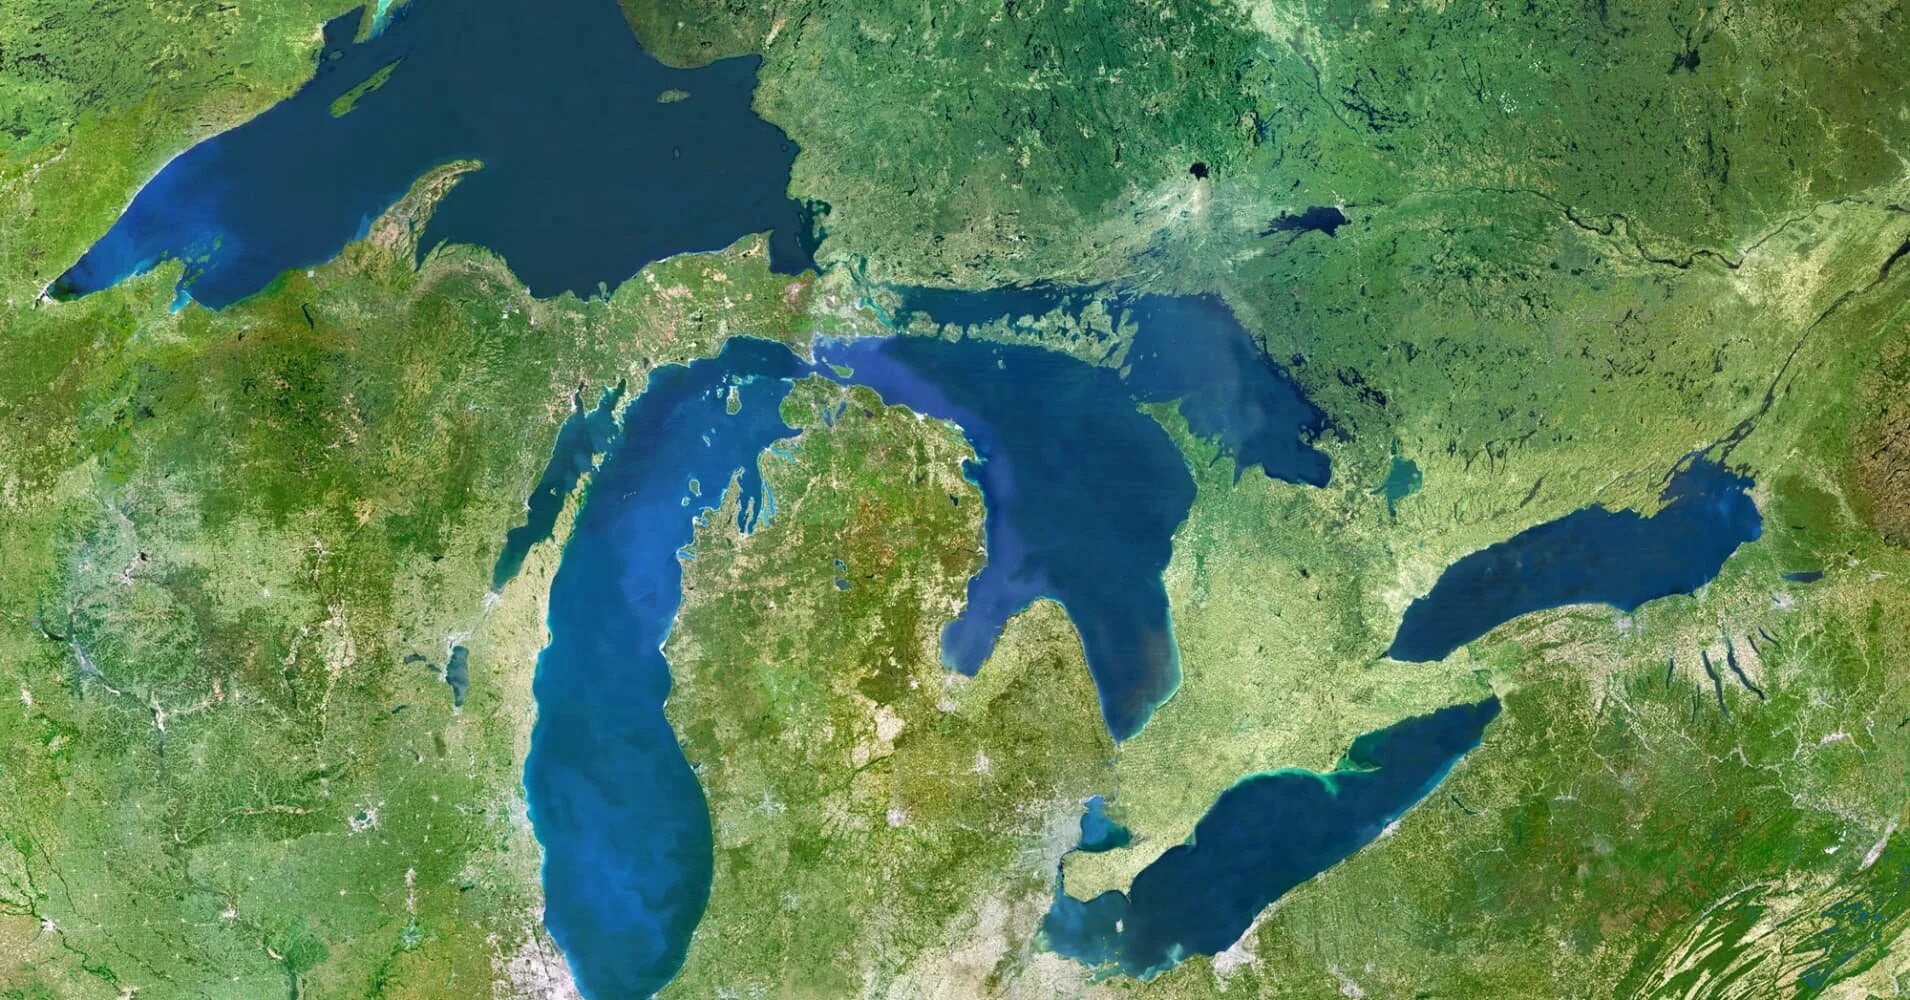 Самое пресноводное озеро северной америки. Великие озера (бассейн Атлантического океана). Великие озера Северной Америки. Великие озёра озёра Северной Америки. Система великих озер Северной Америки.